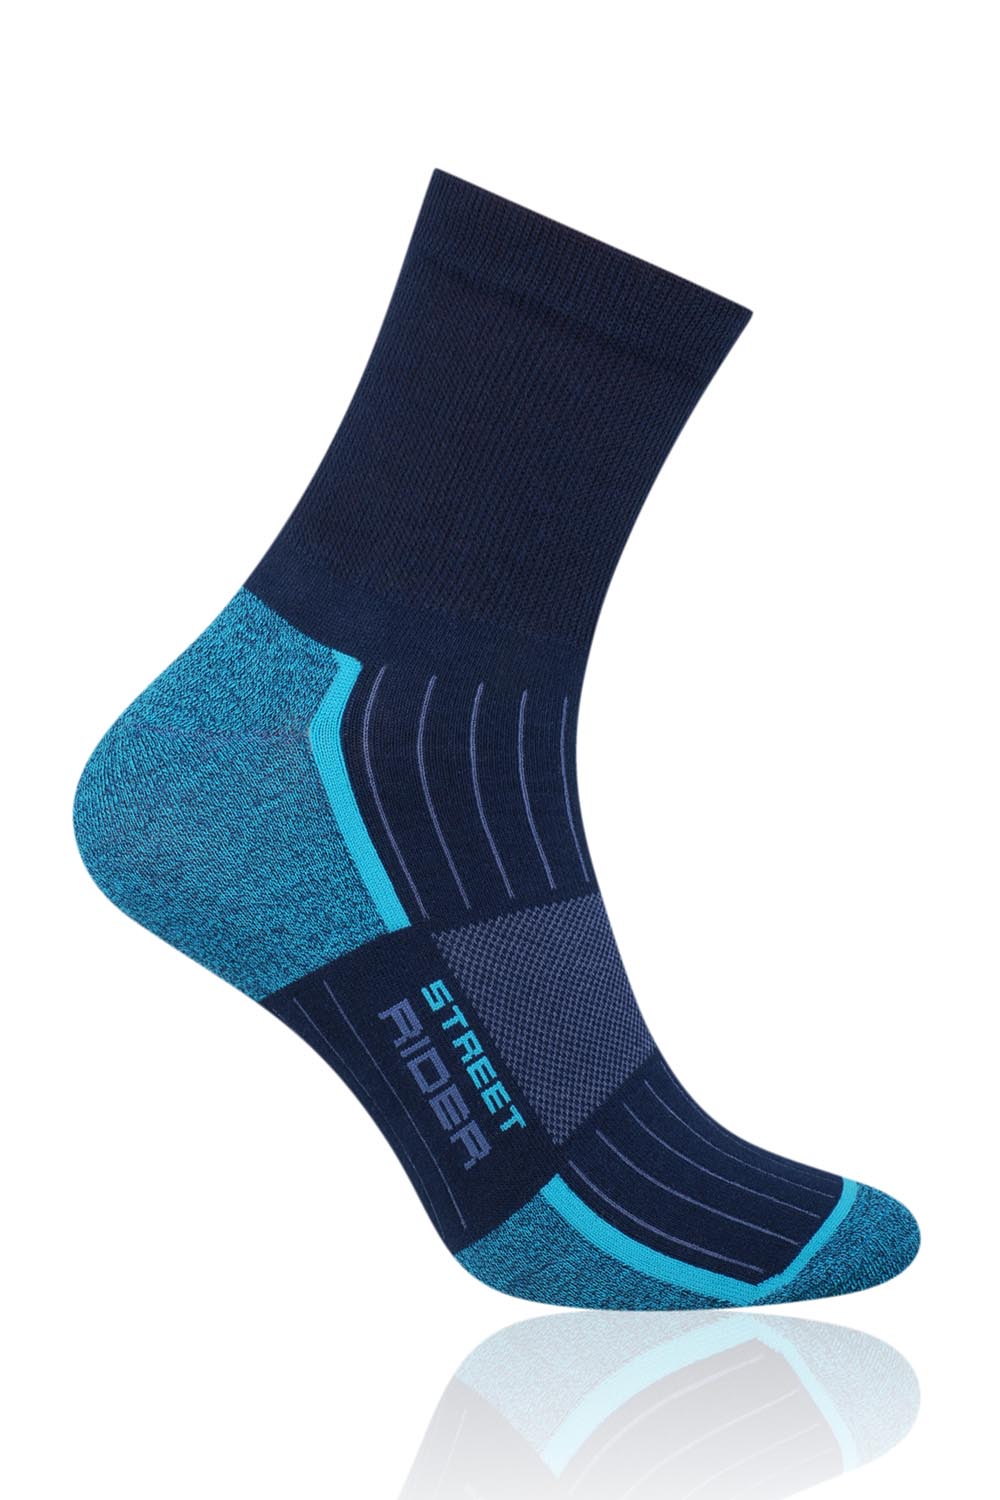 Sportovní ponožky Steven 057-205 - Tm.modrá/tyrkysová/rider/41-43